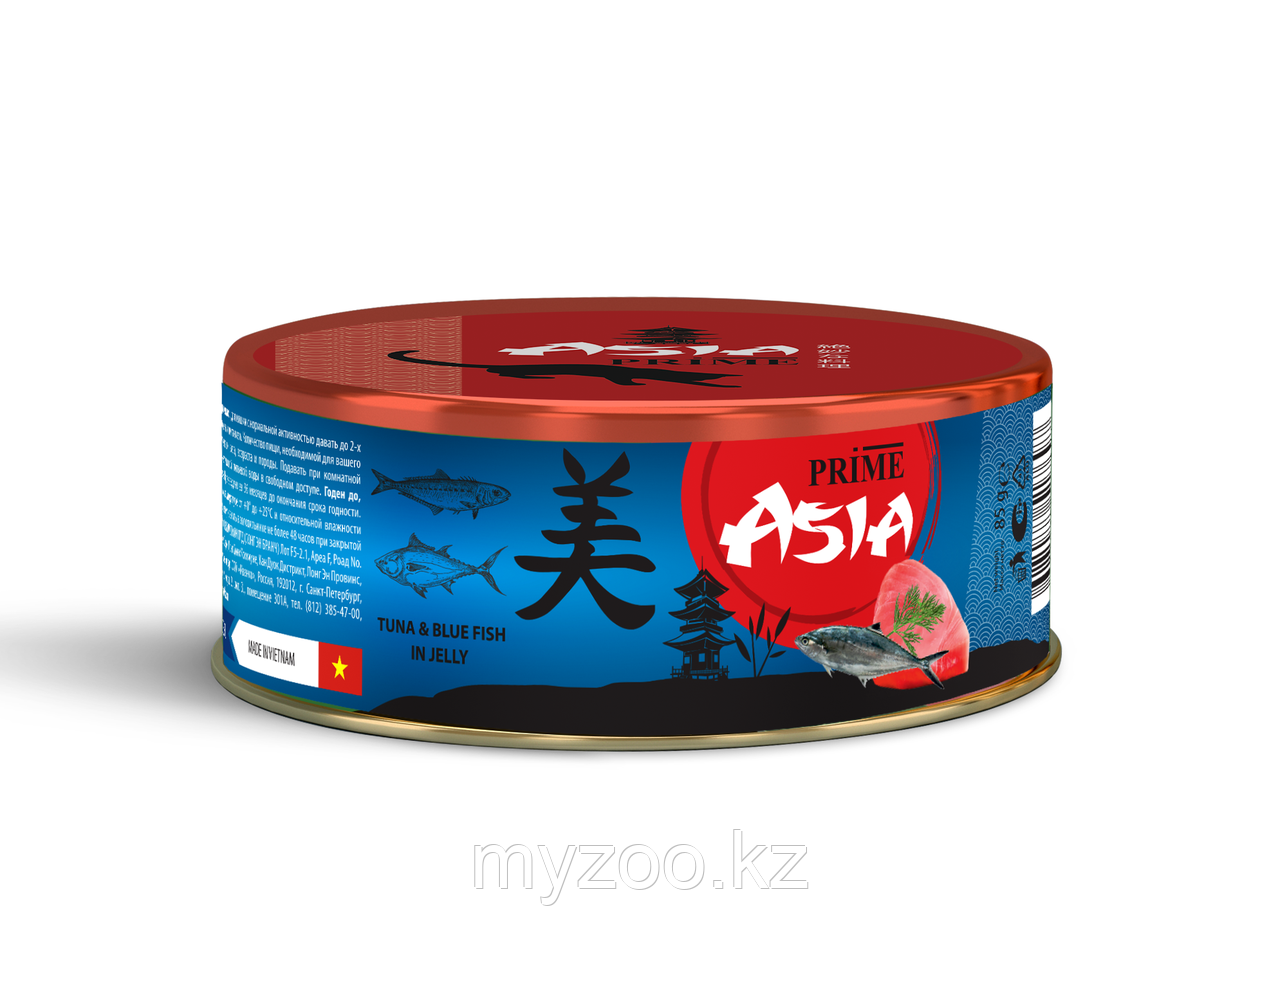 Prime Asia консервы для кошек тунец с голубой рыбой в желе, 85гр